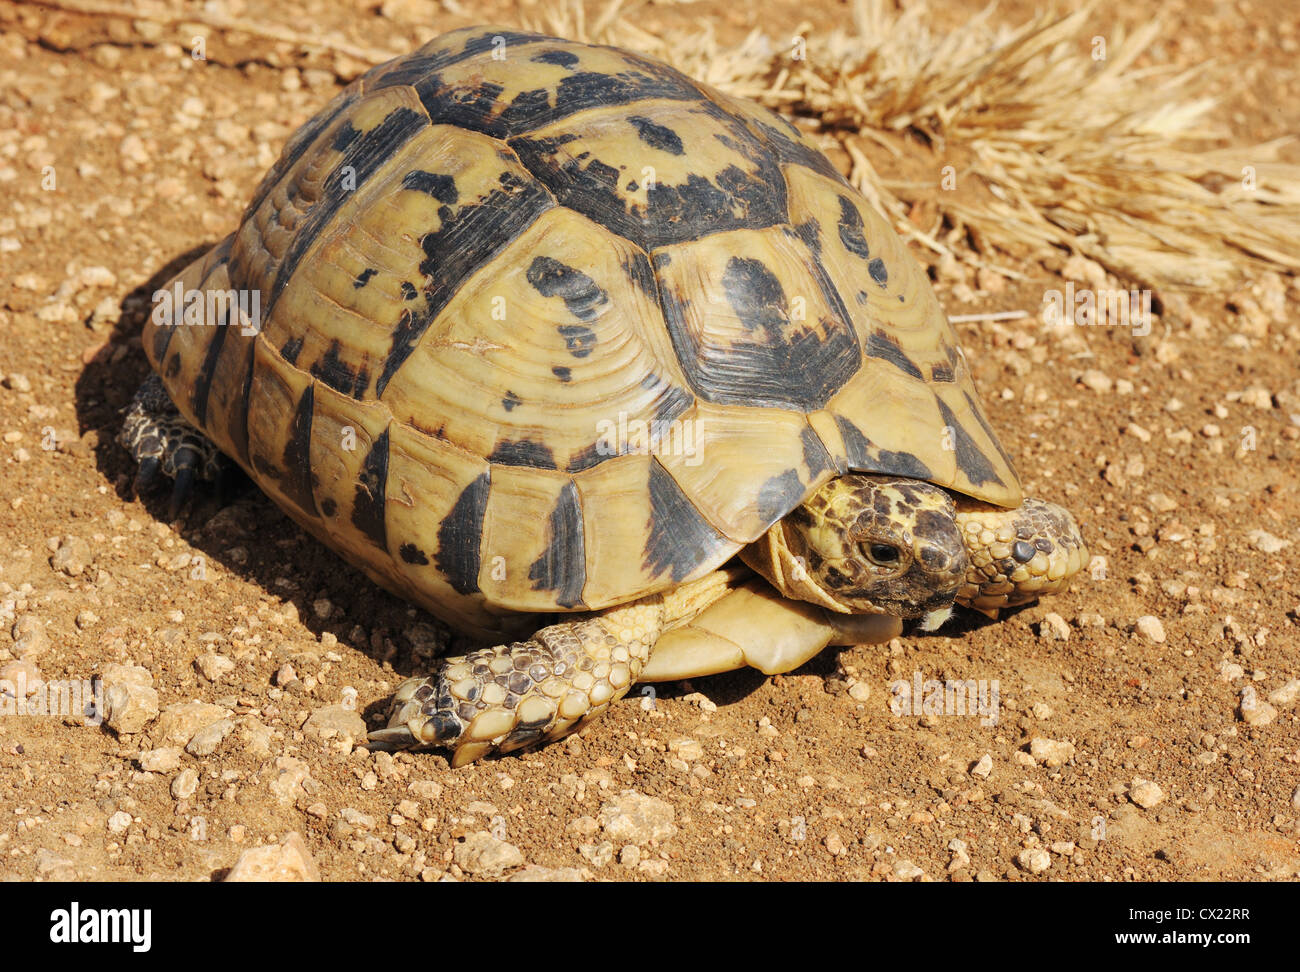 Eine Schildkröte mit einem gelb-schwarzen Panzer kriechen auf dem Boden Stockfoto